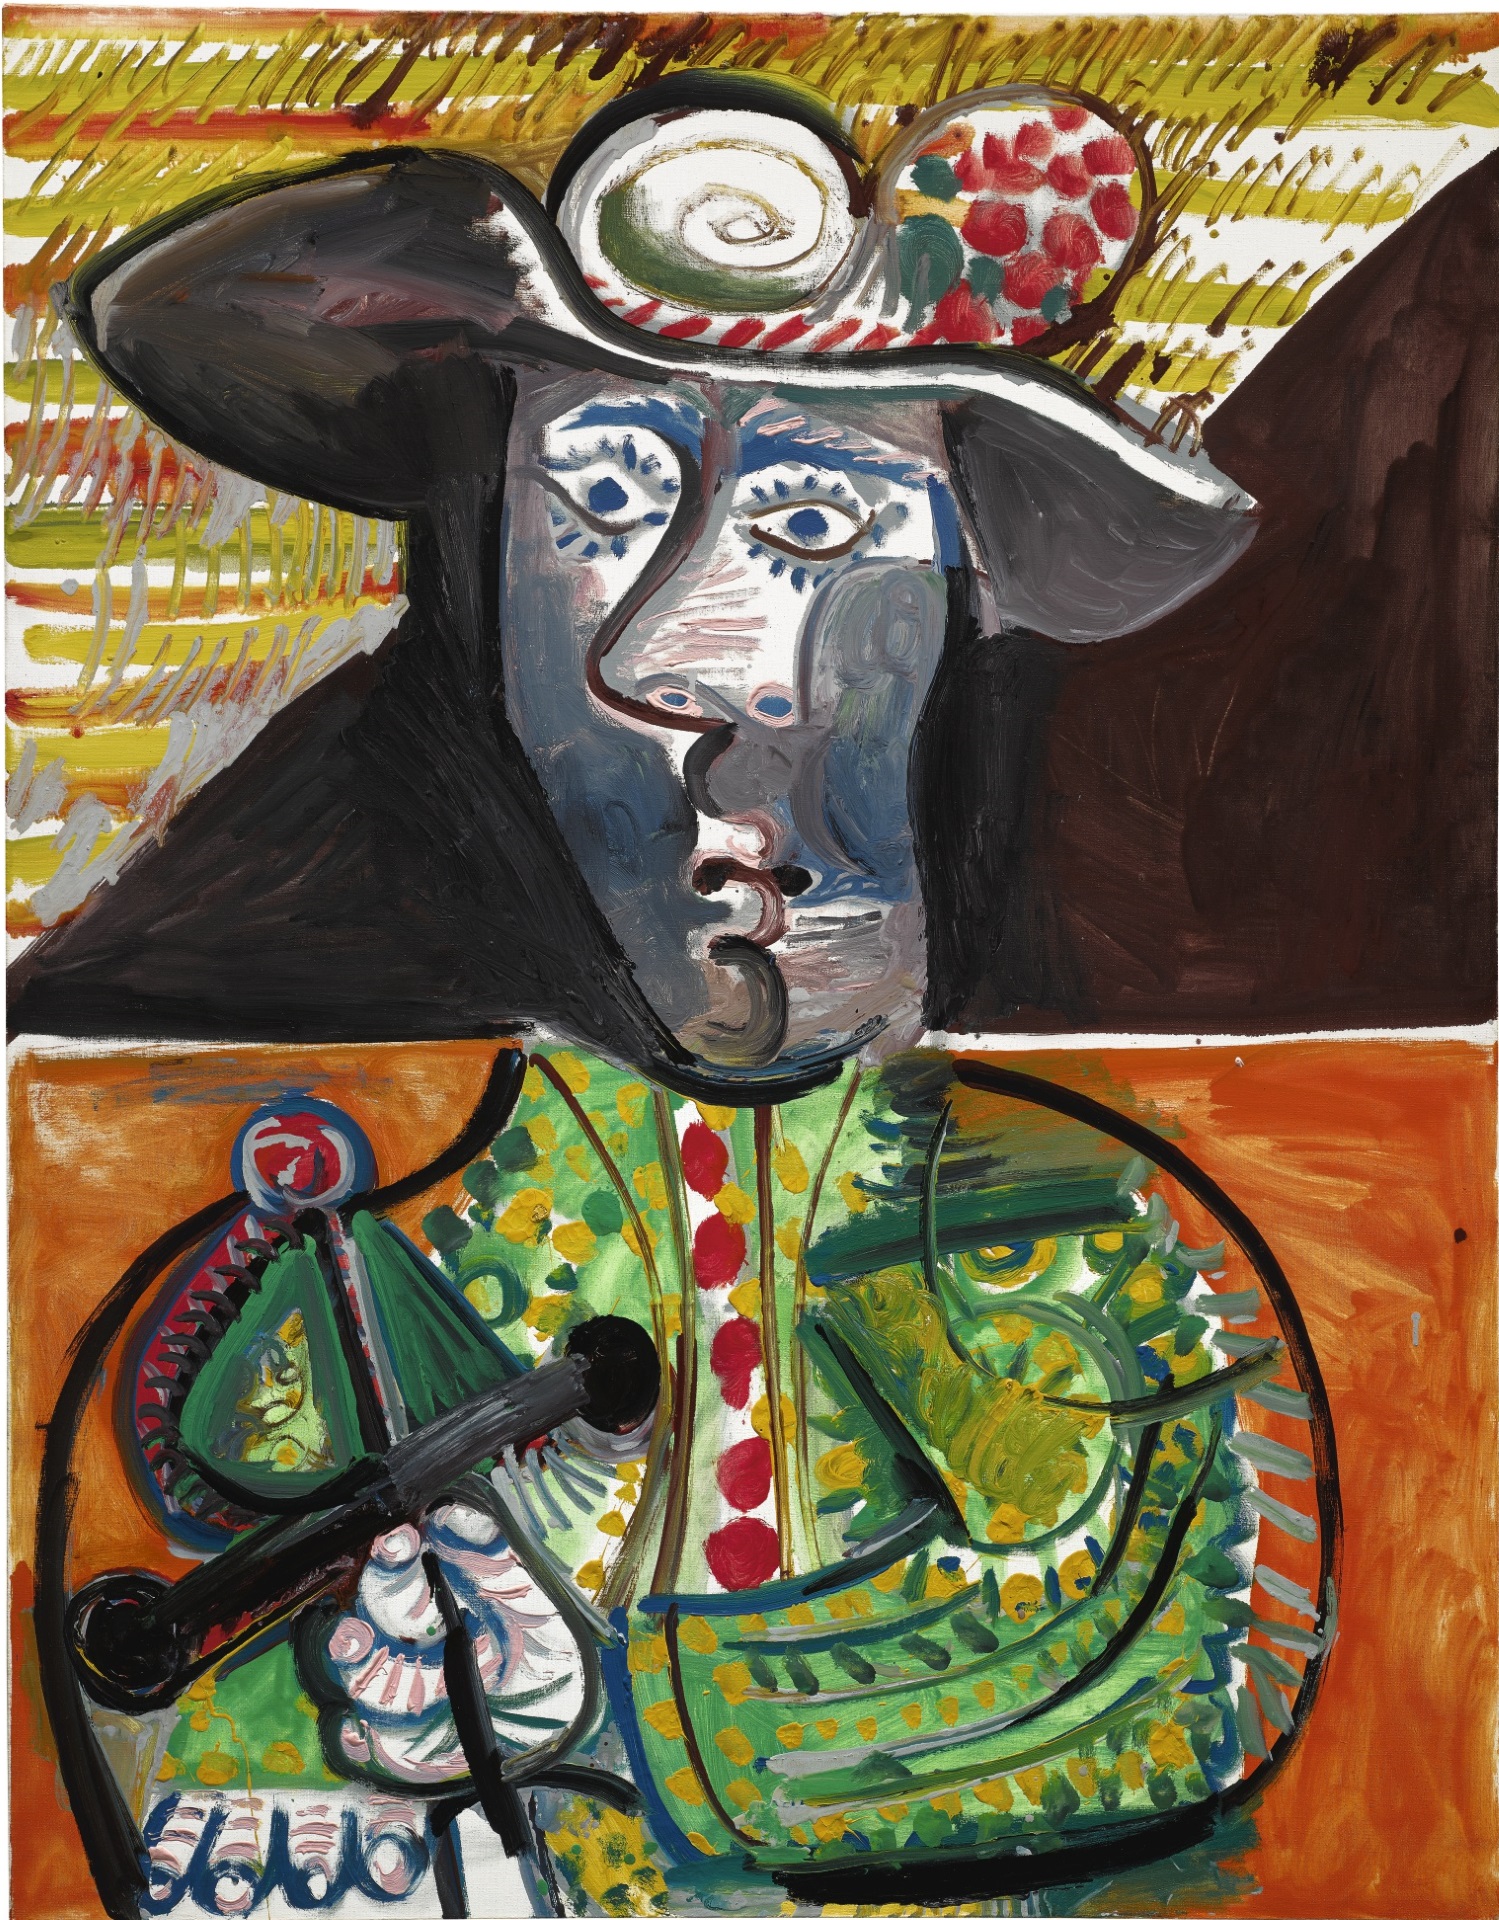 Pablo Picasso - Le matador 1970